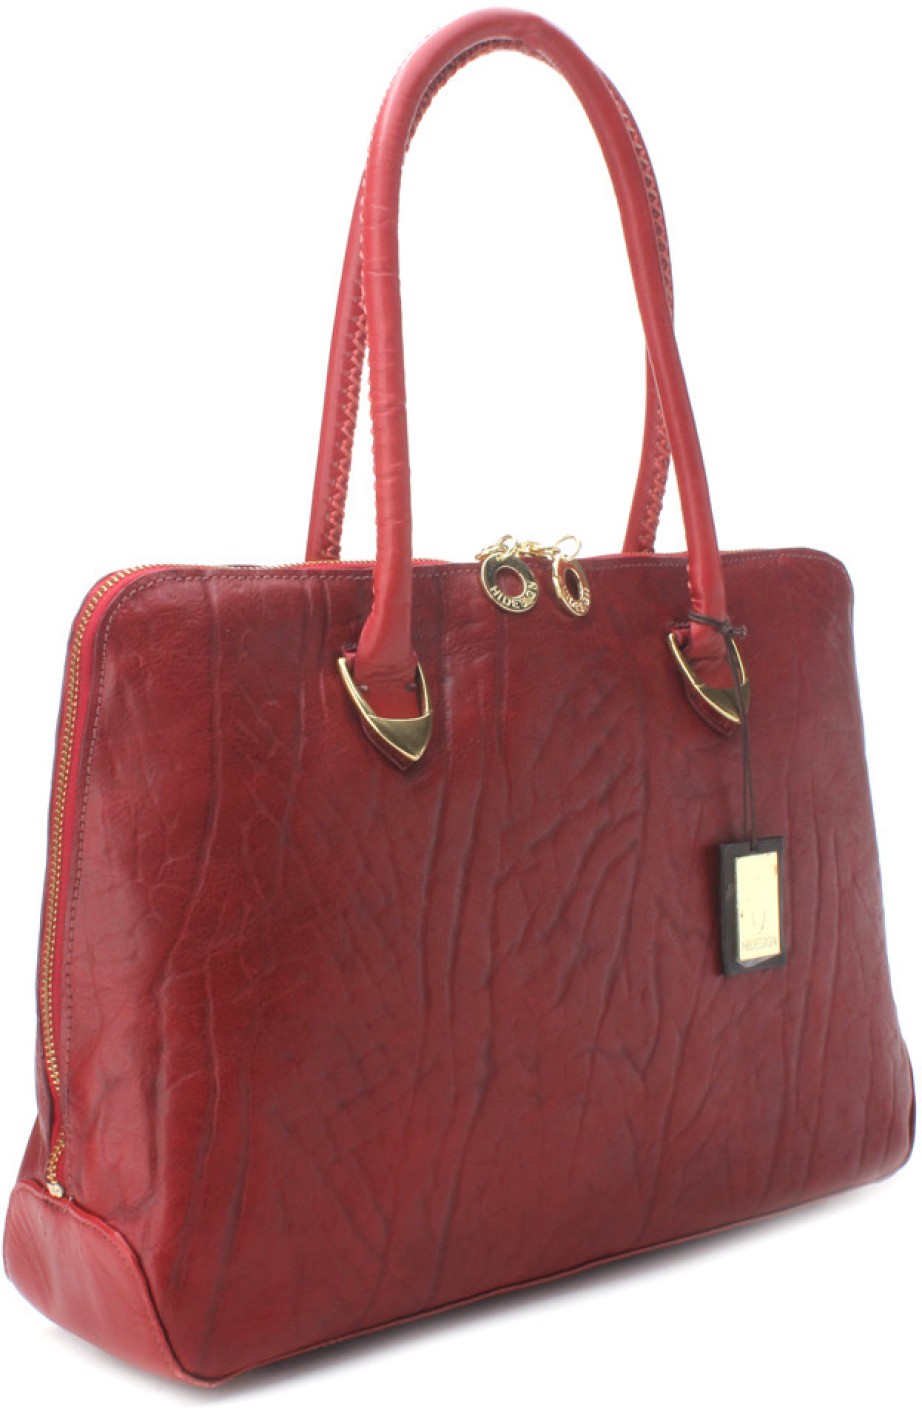 Buy Hidesign Hand-held Bag Red Online @ Best Price in India | Flipkart.com